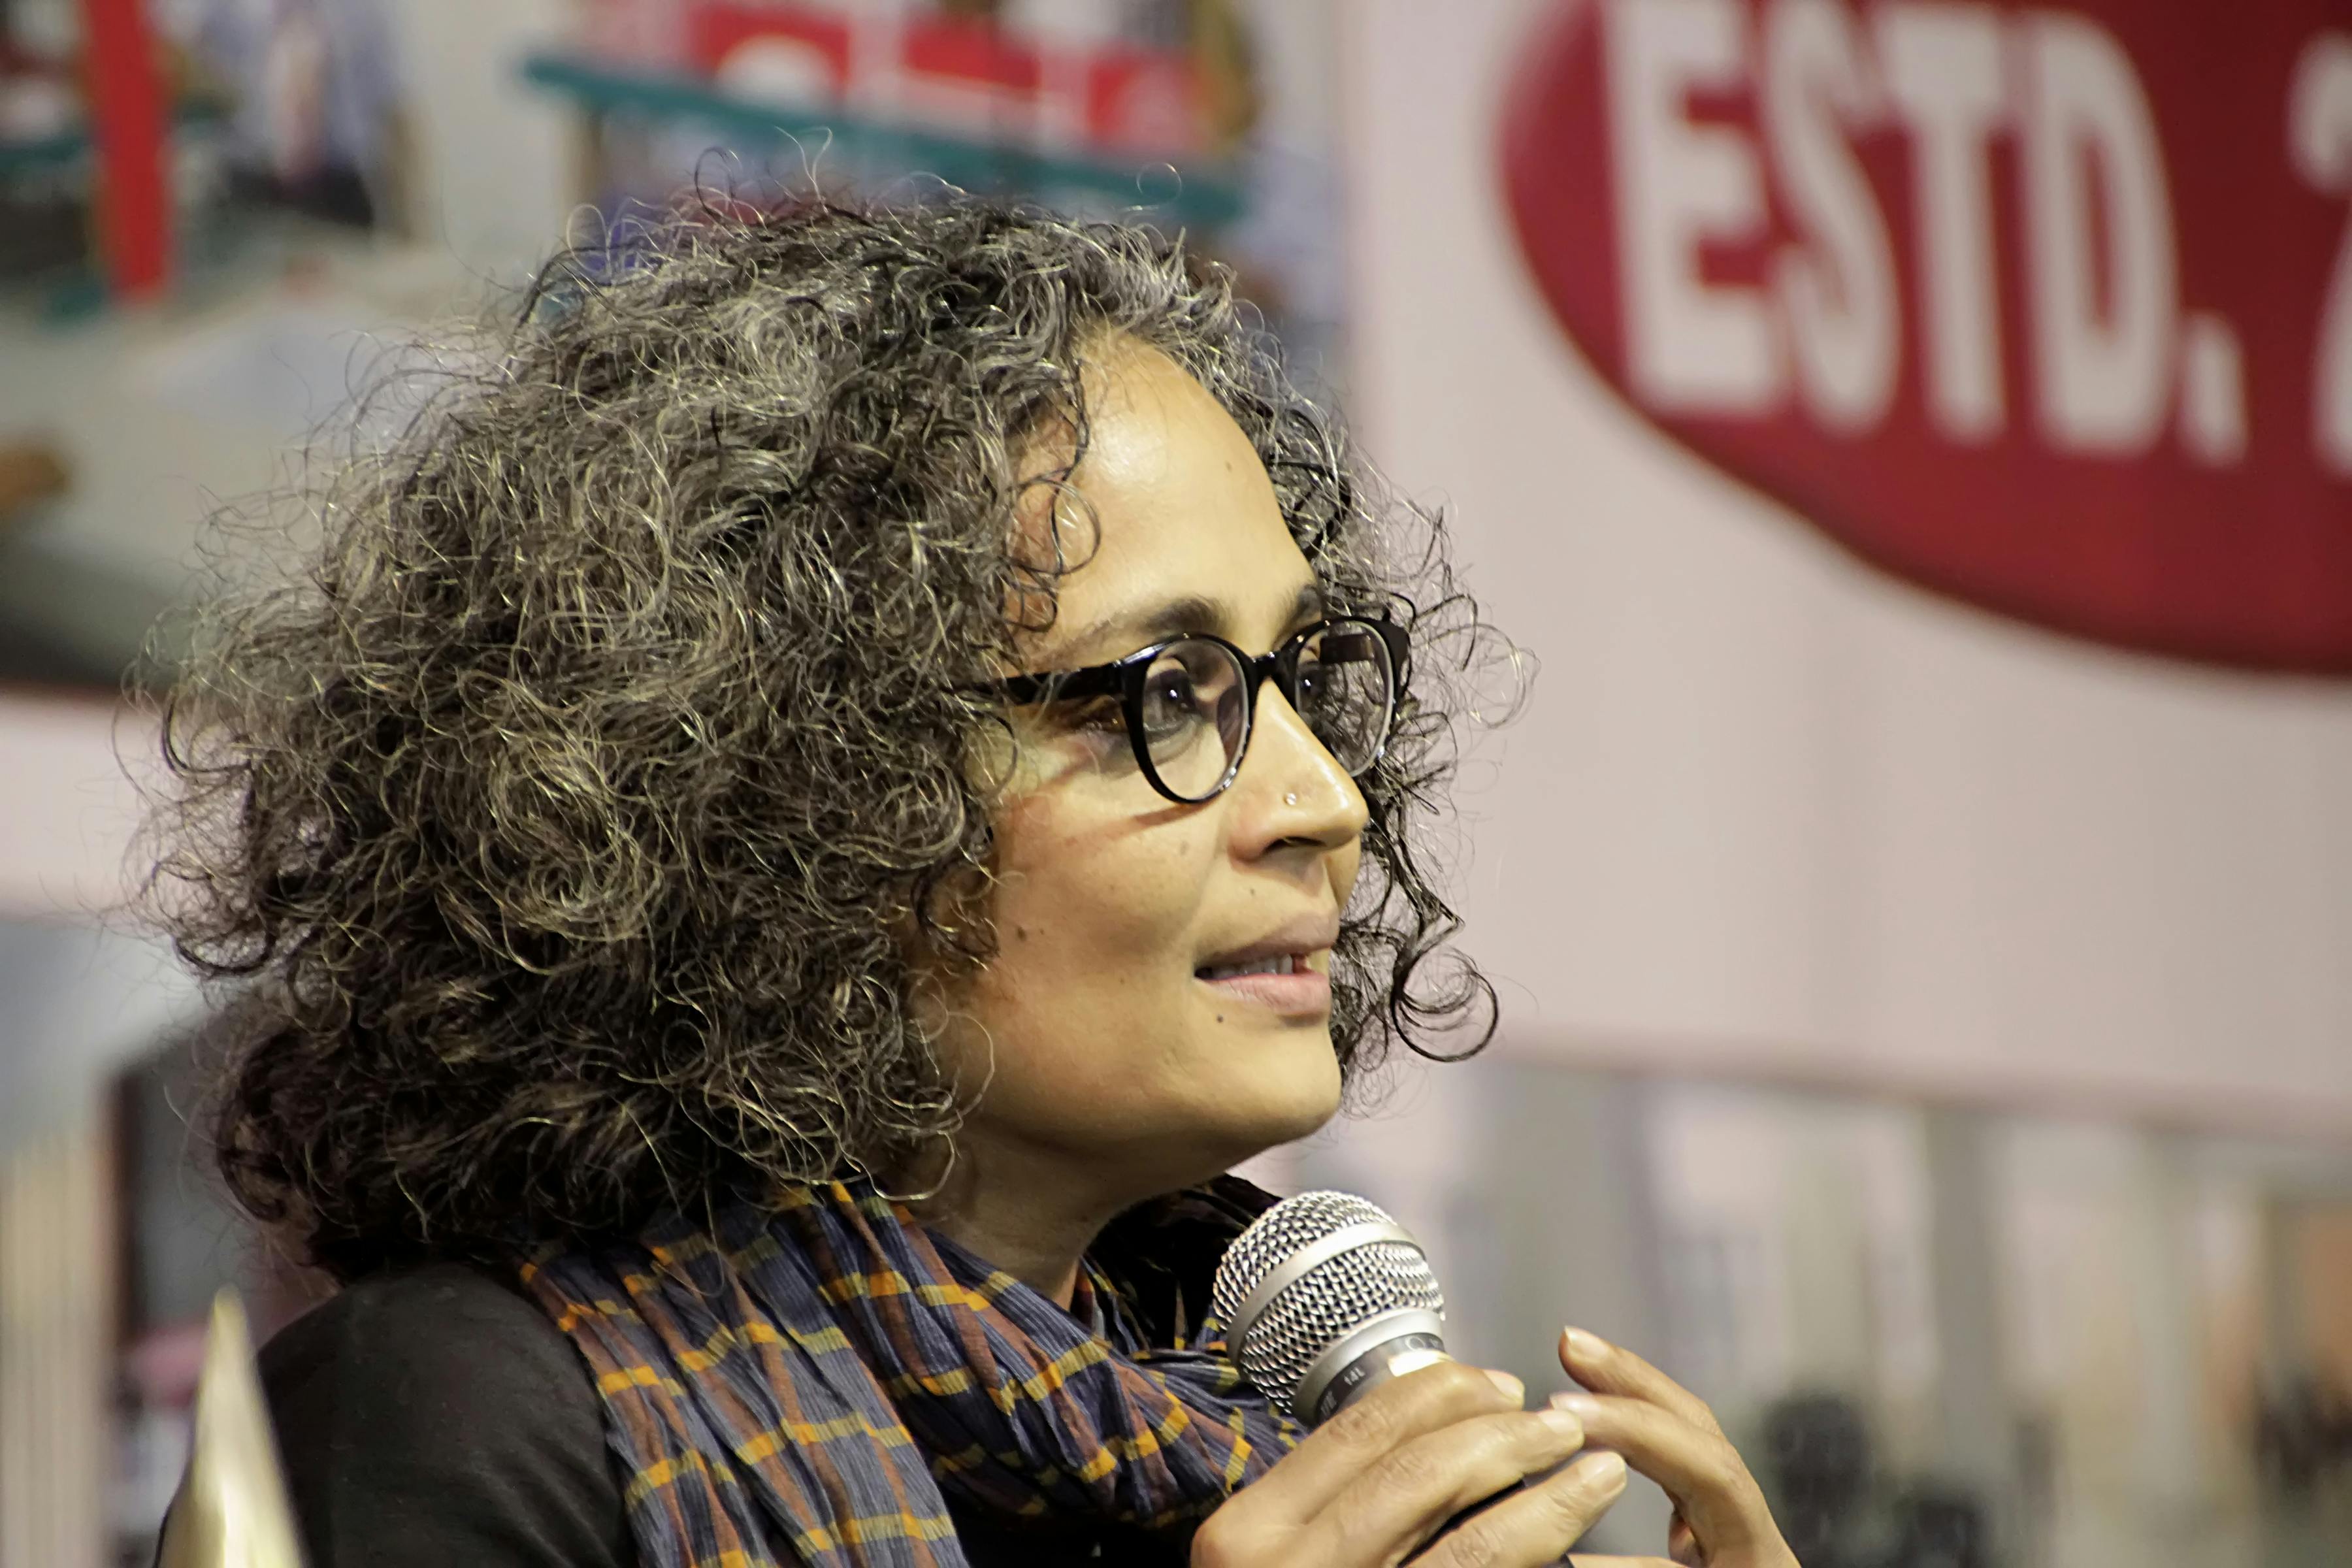 سوزانا ارونداتی روی (Arundhati Roy)، متولد ۱۹۶۱، نویسنده و فعال سیاسی هندی، رمان معروف او: خدای چیزهای کوچک (۱۹۹۷)